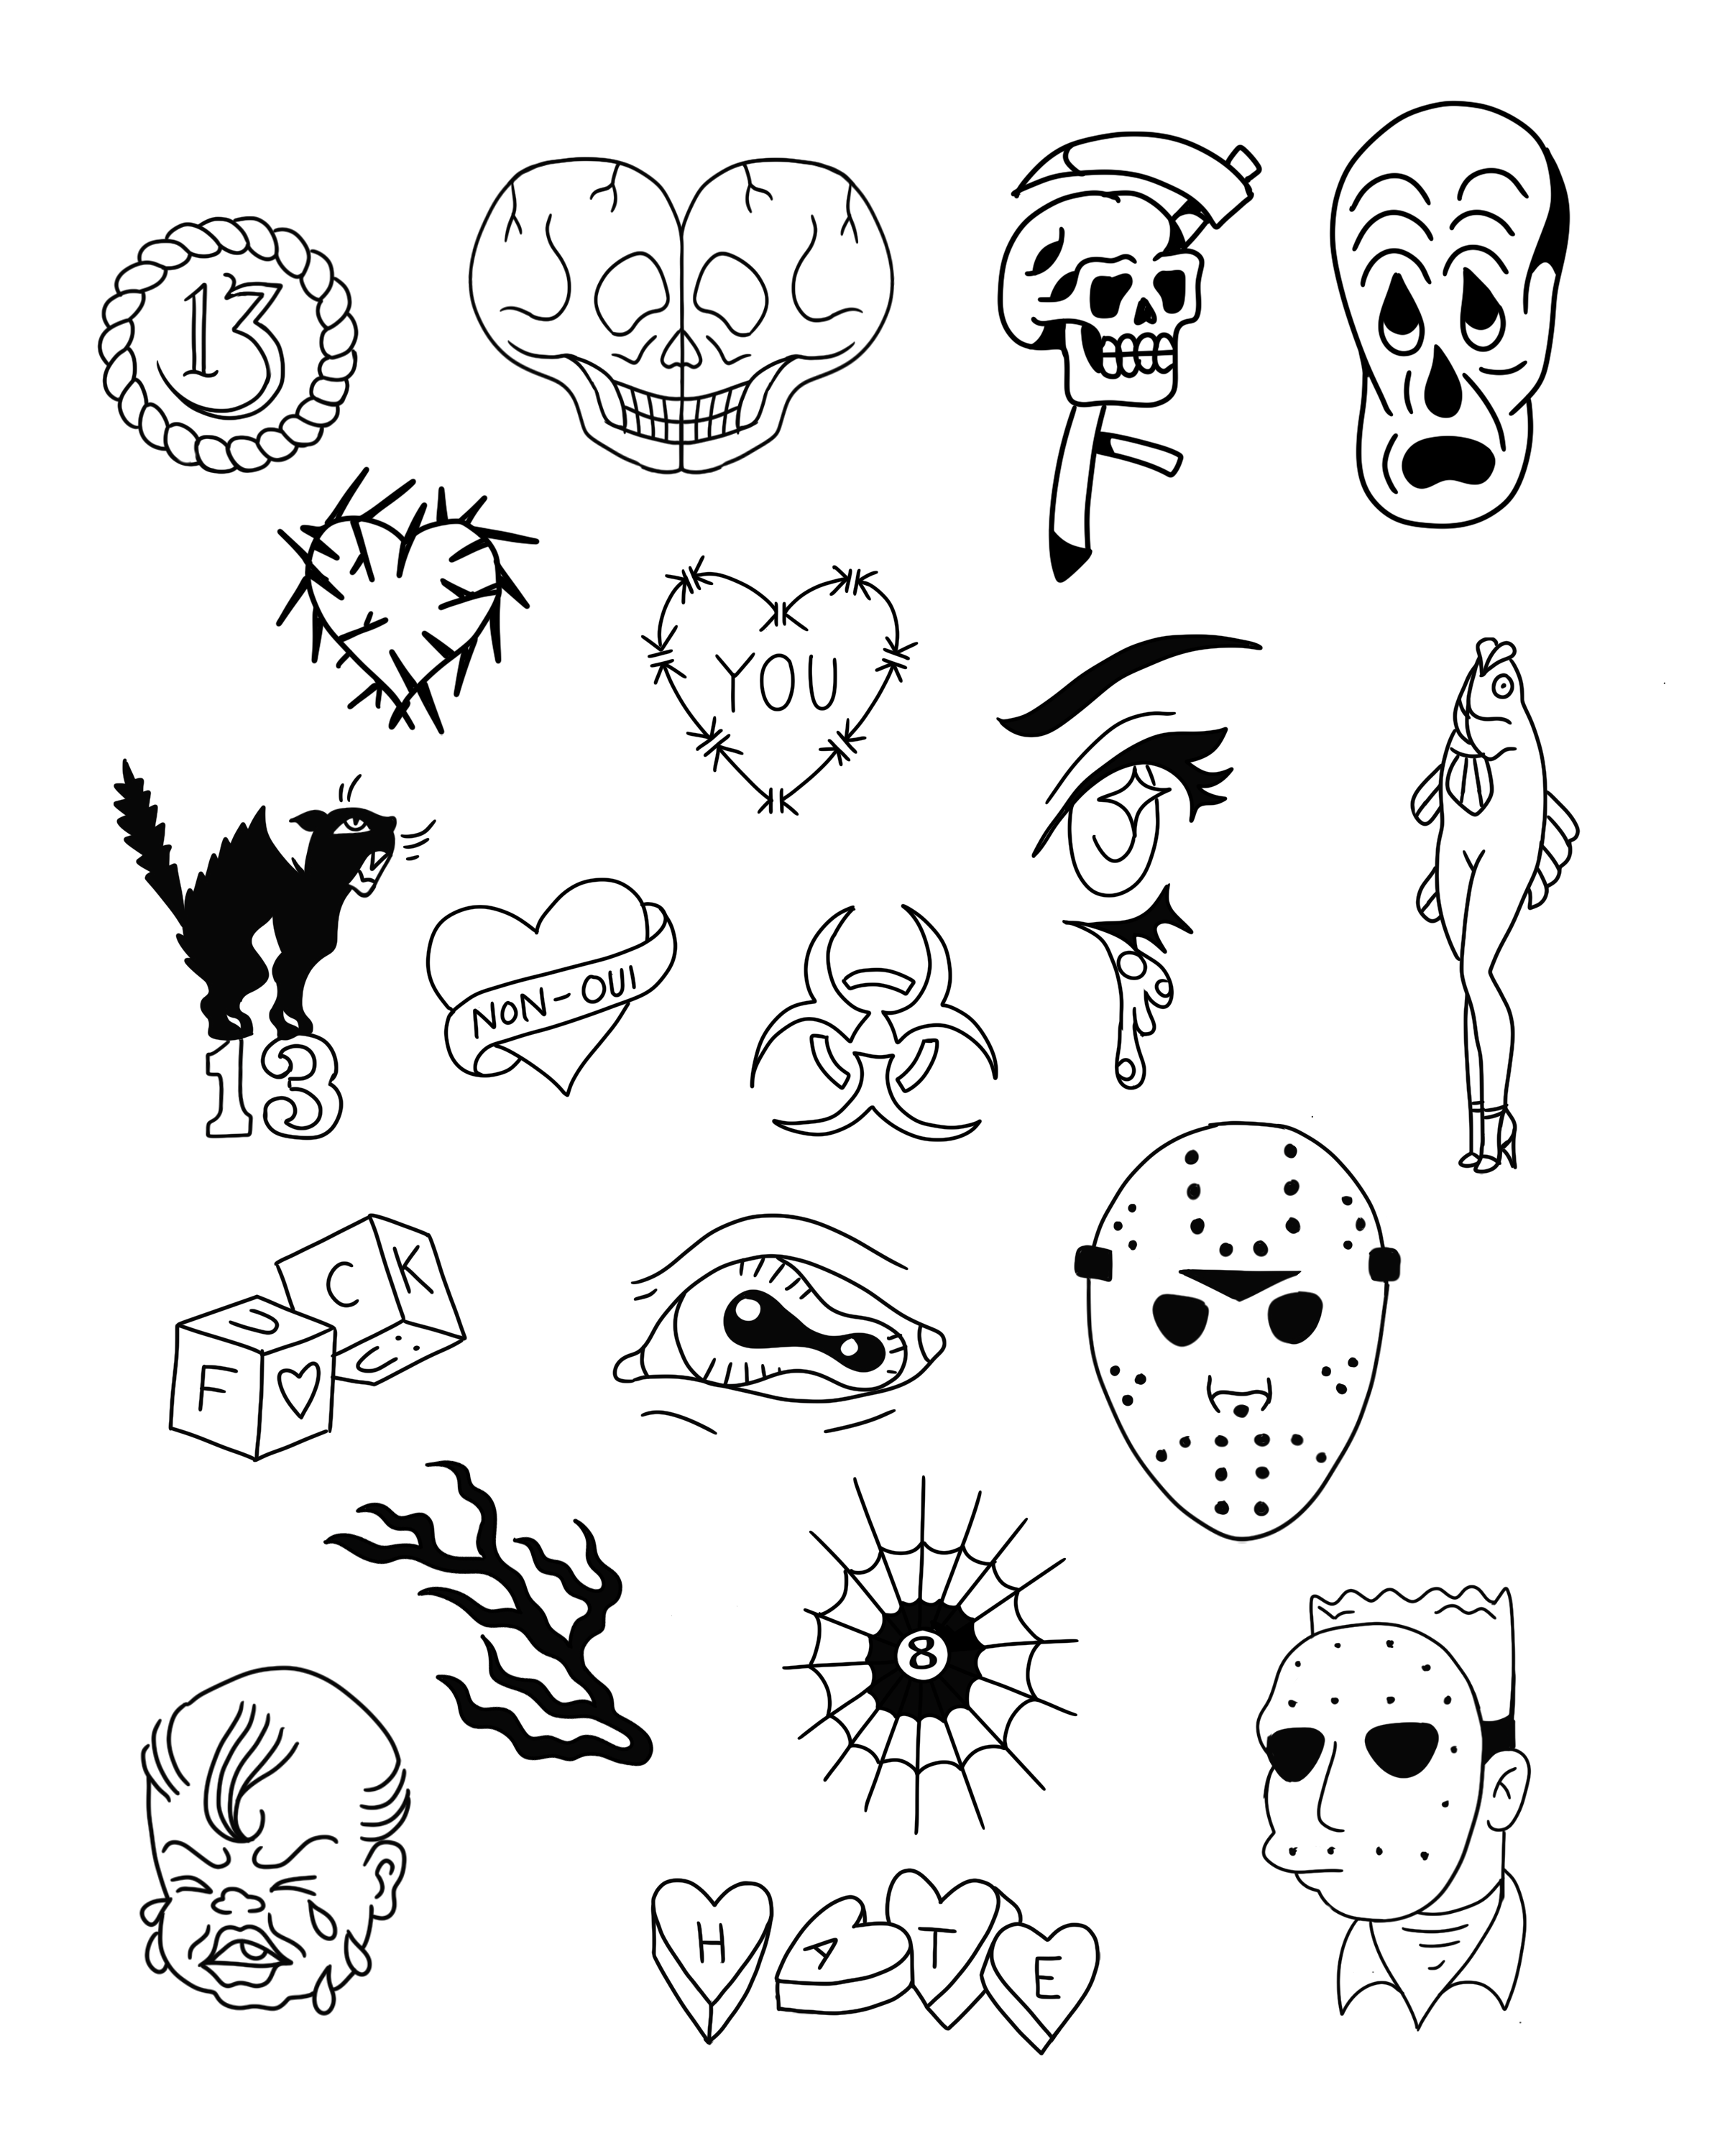 440 Cartoon Of The Simple Skull Tattoo Designs Illustrations RoyaltyFree  Vector Graphics  Clip Art  iStock